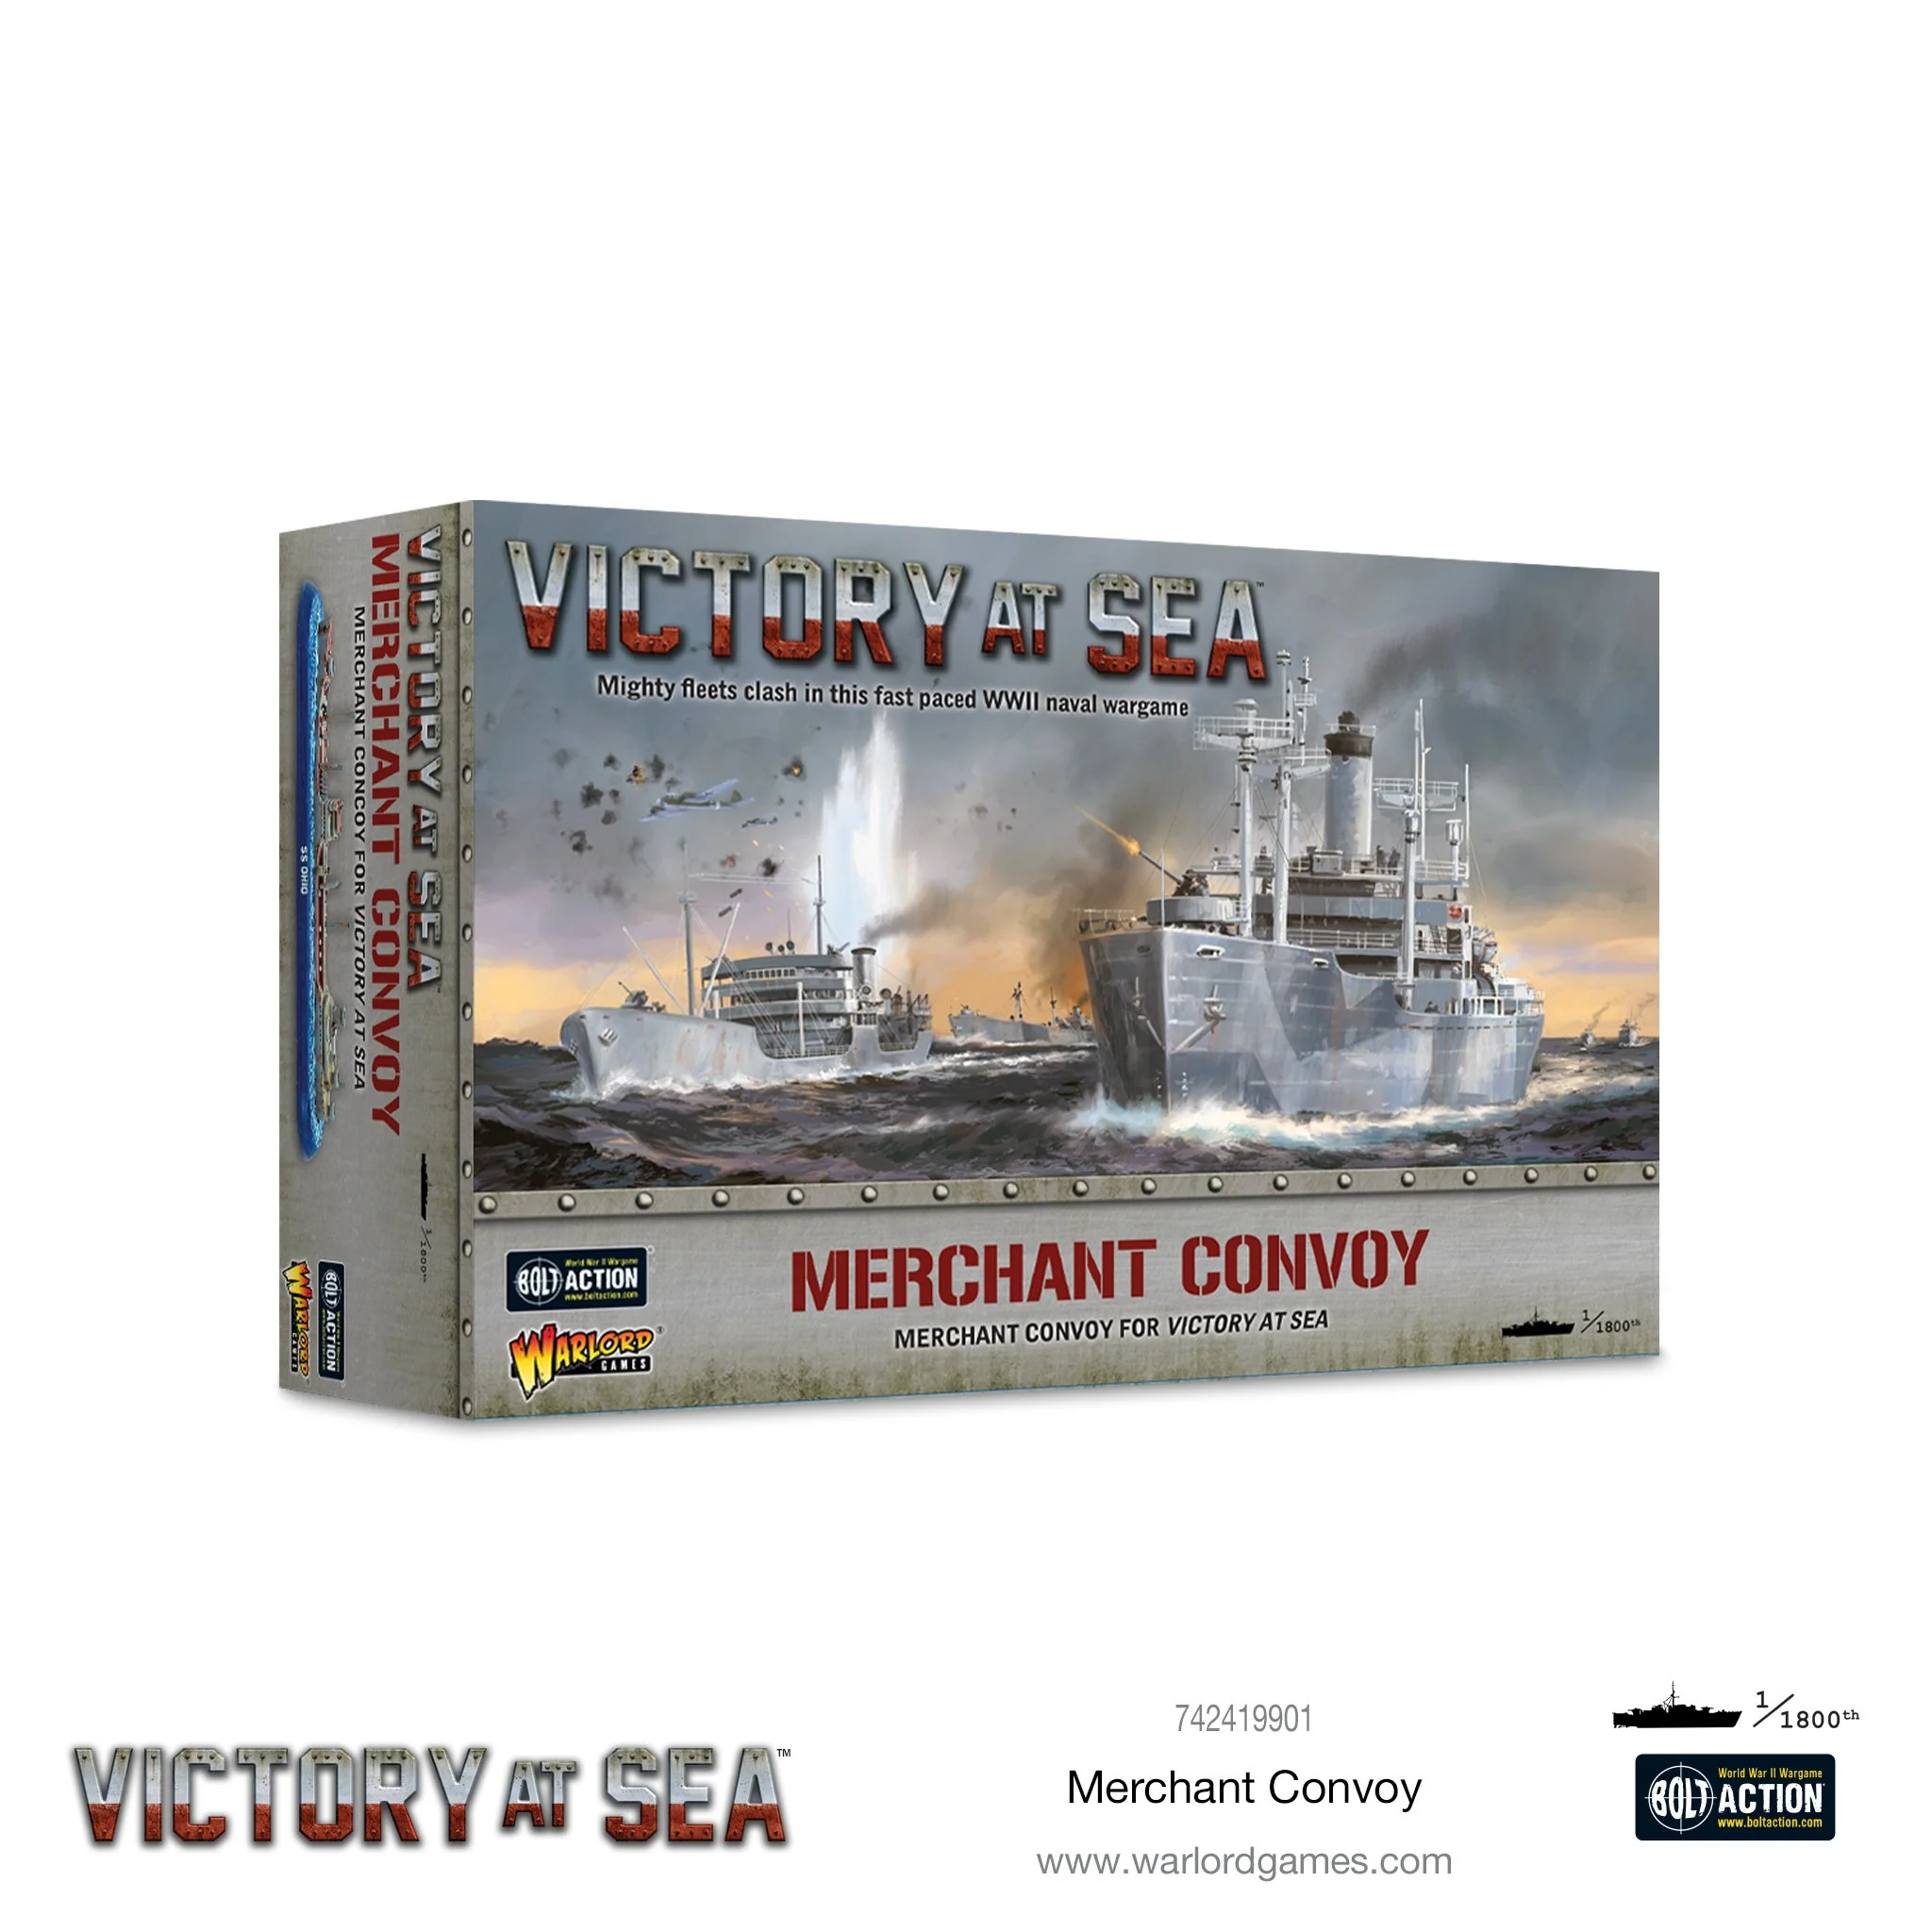 Merchant Convoy